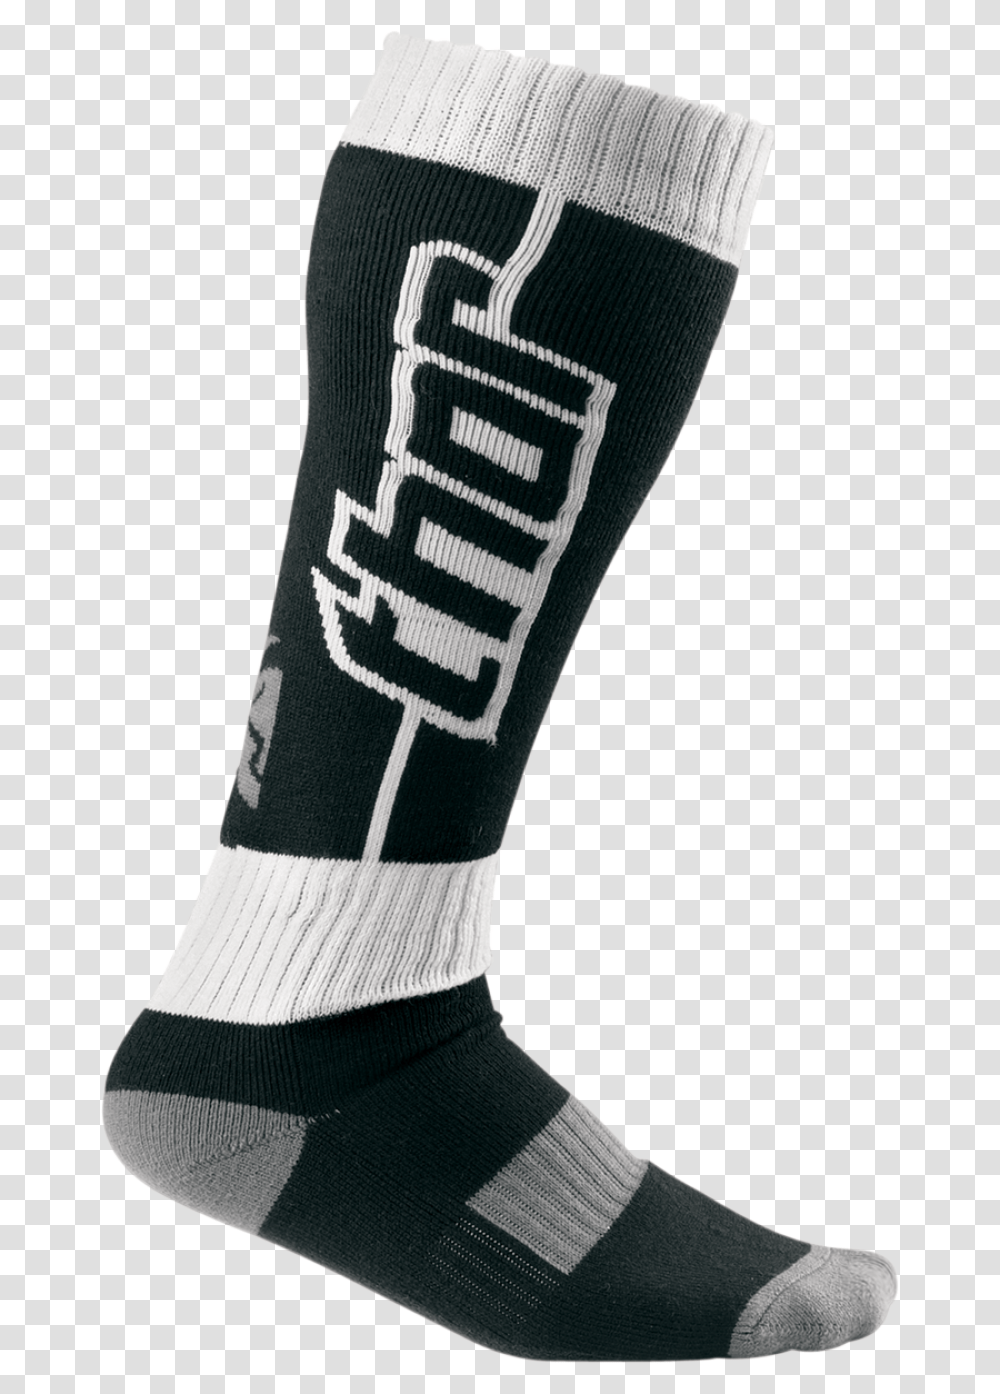 Thor Letter Socks Image, Apparel, Footwear, Shoe Transparent Png